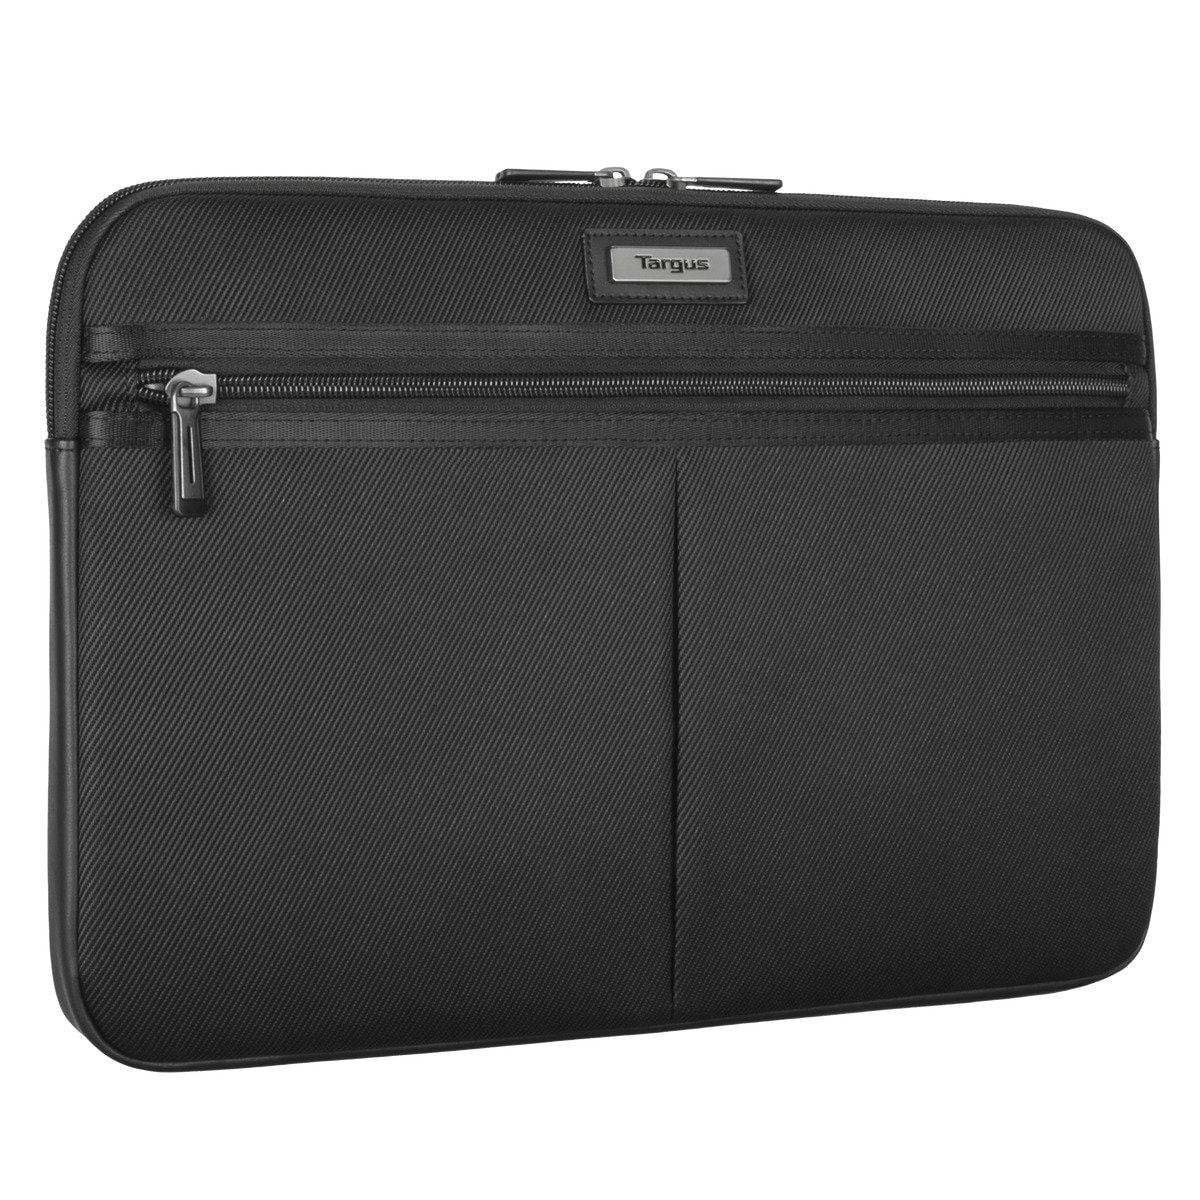 Targus Laptoptasche »Mobile Elite Sleeve 13 - 14«, gepolsterte Tasche für optimalen Schutz